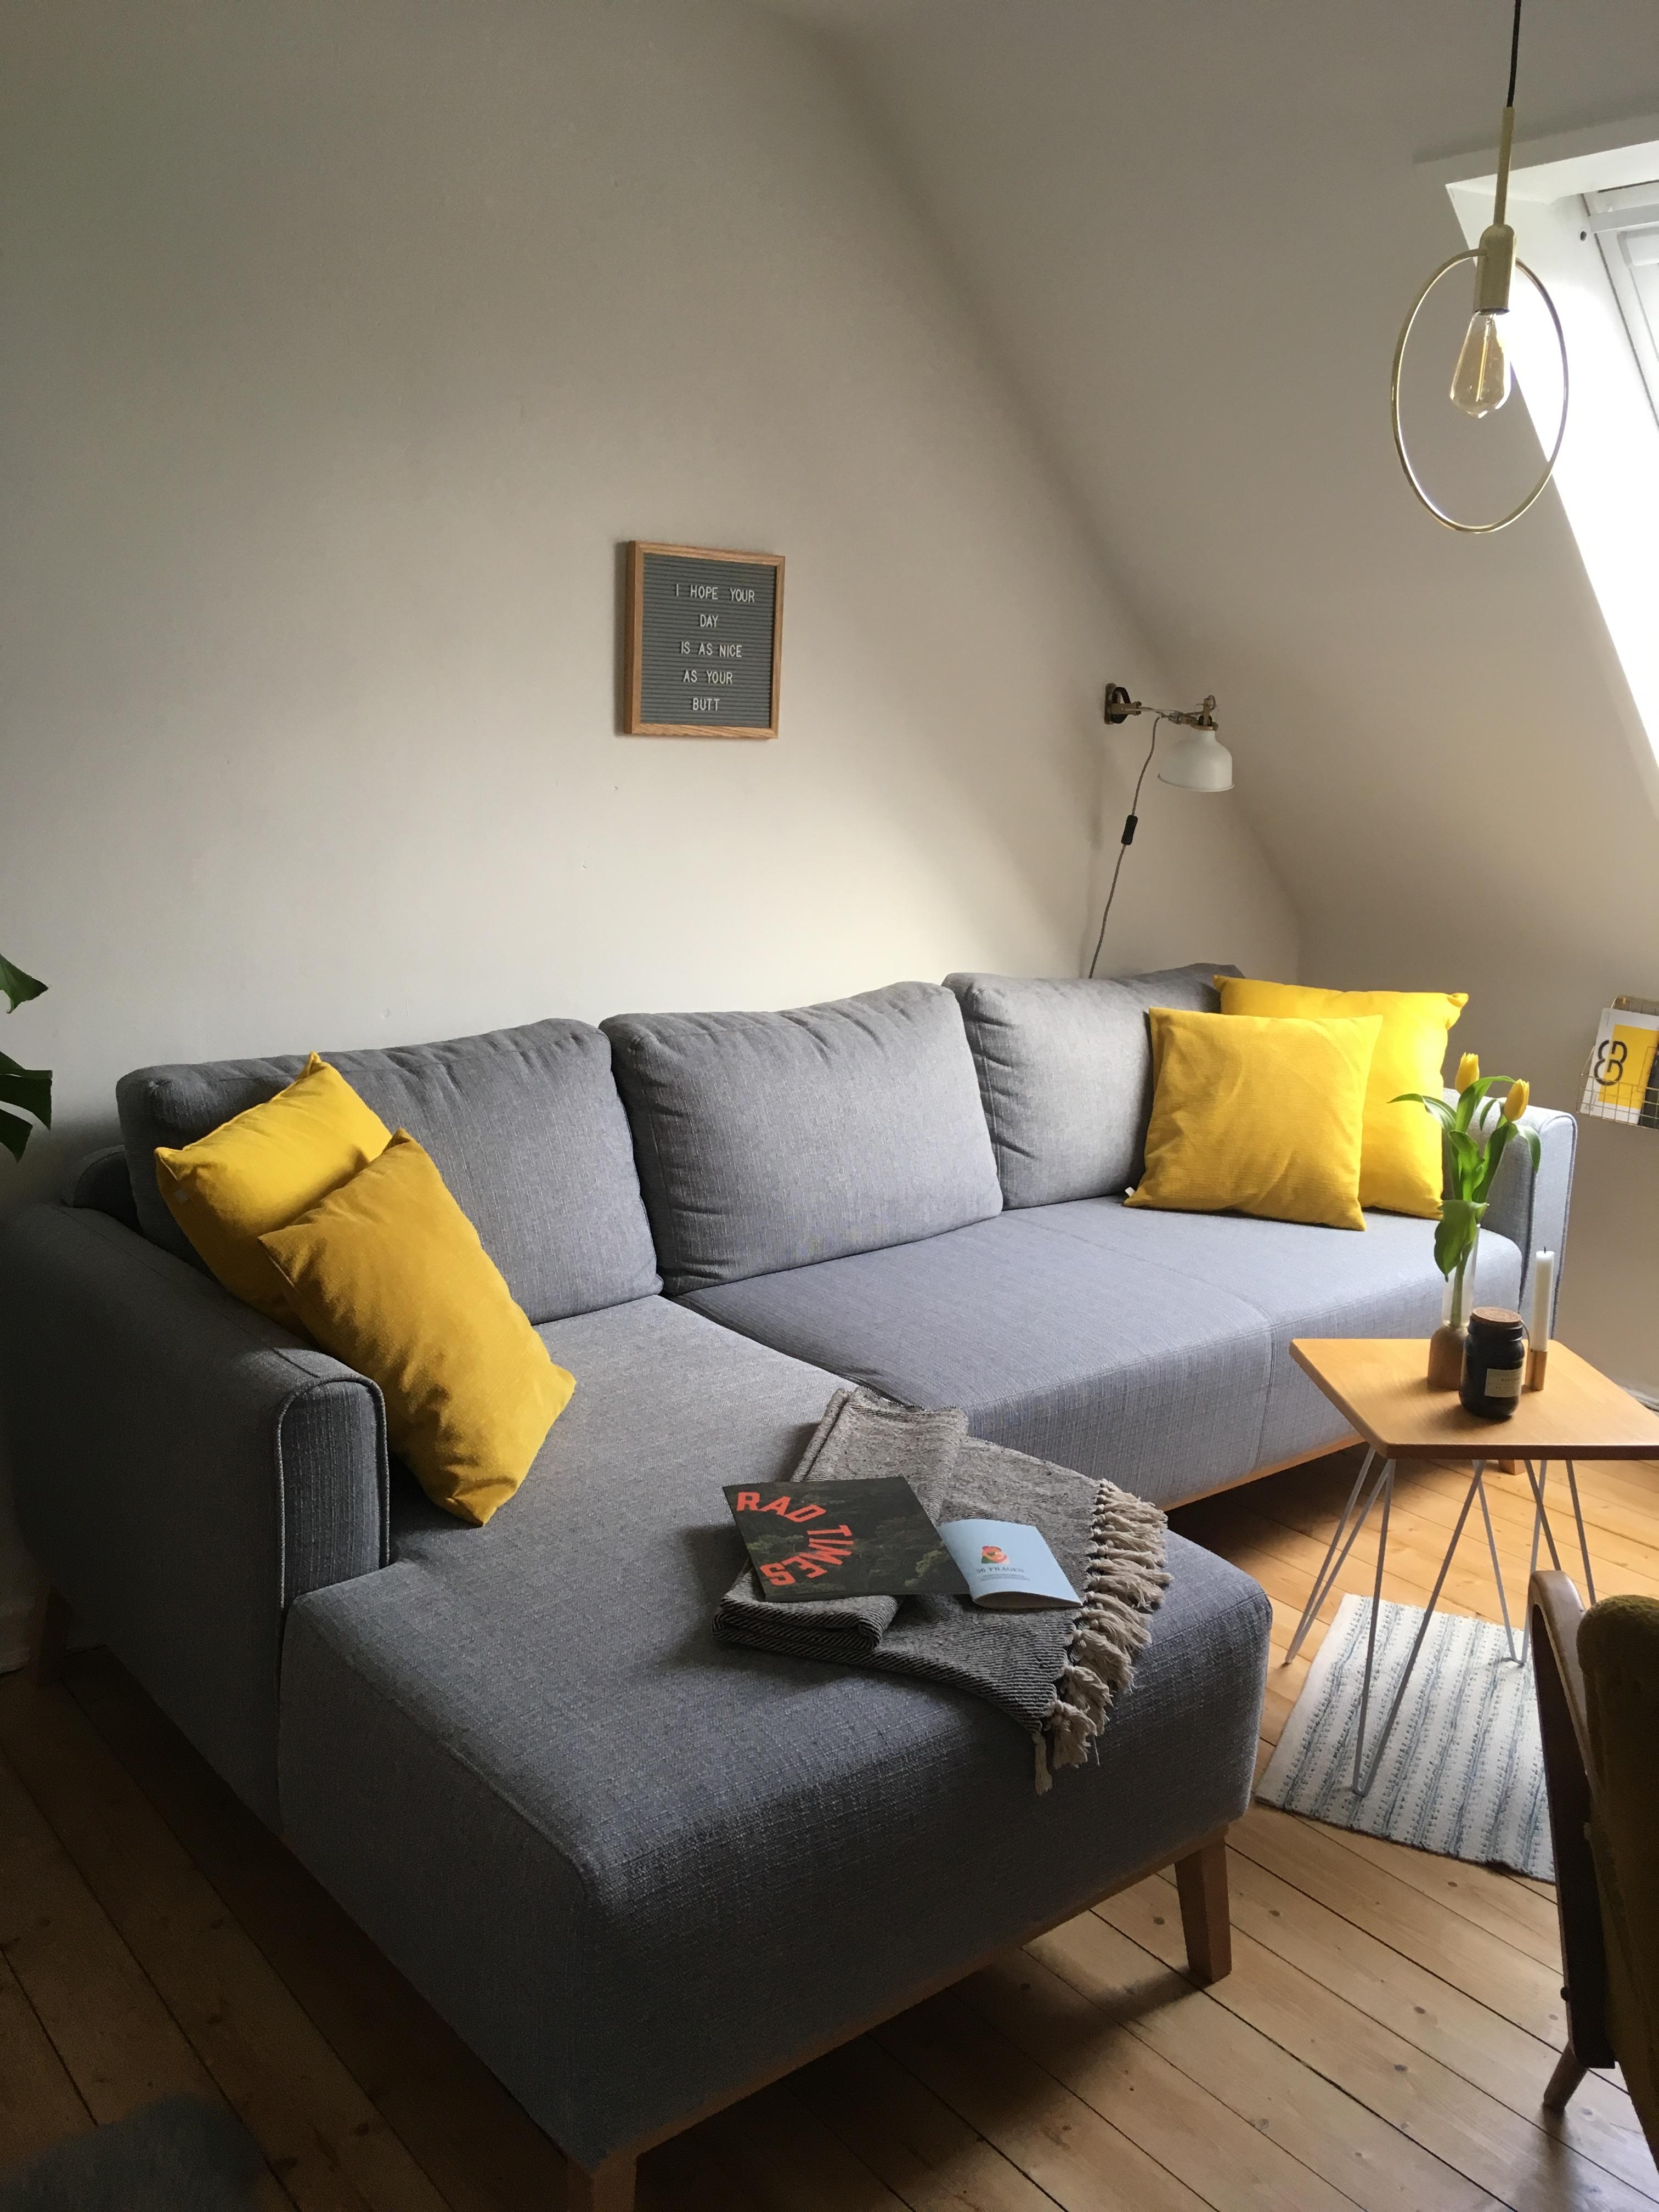 Geliebtes #sofa, klein schick und super gemütlich. Design und Produktion aus Spanien. #livingchallenge 